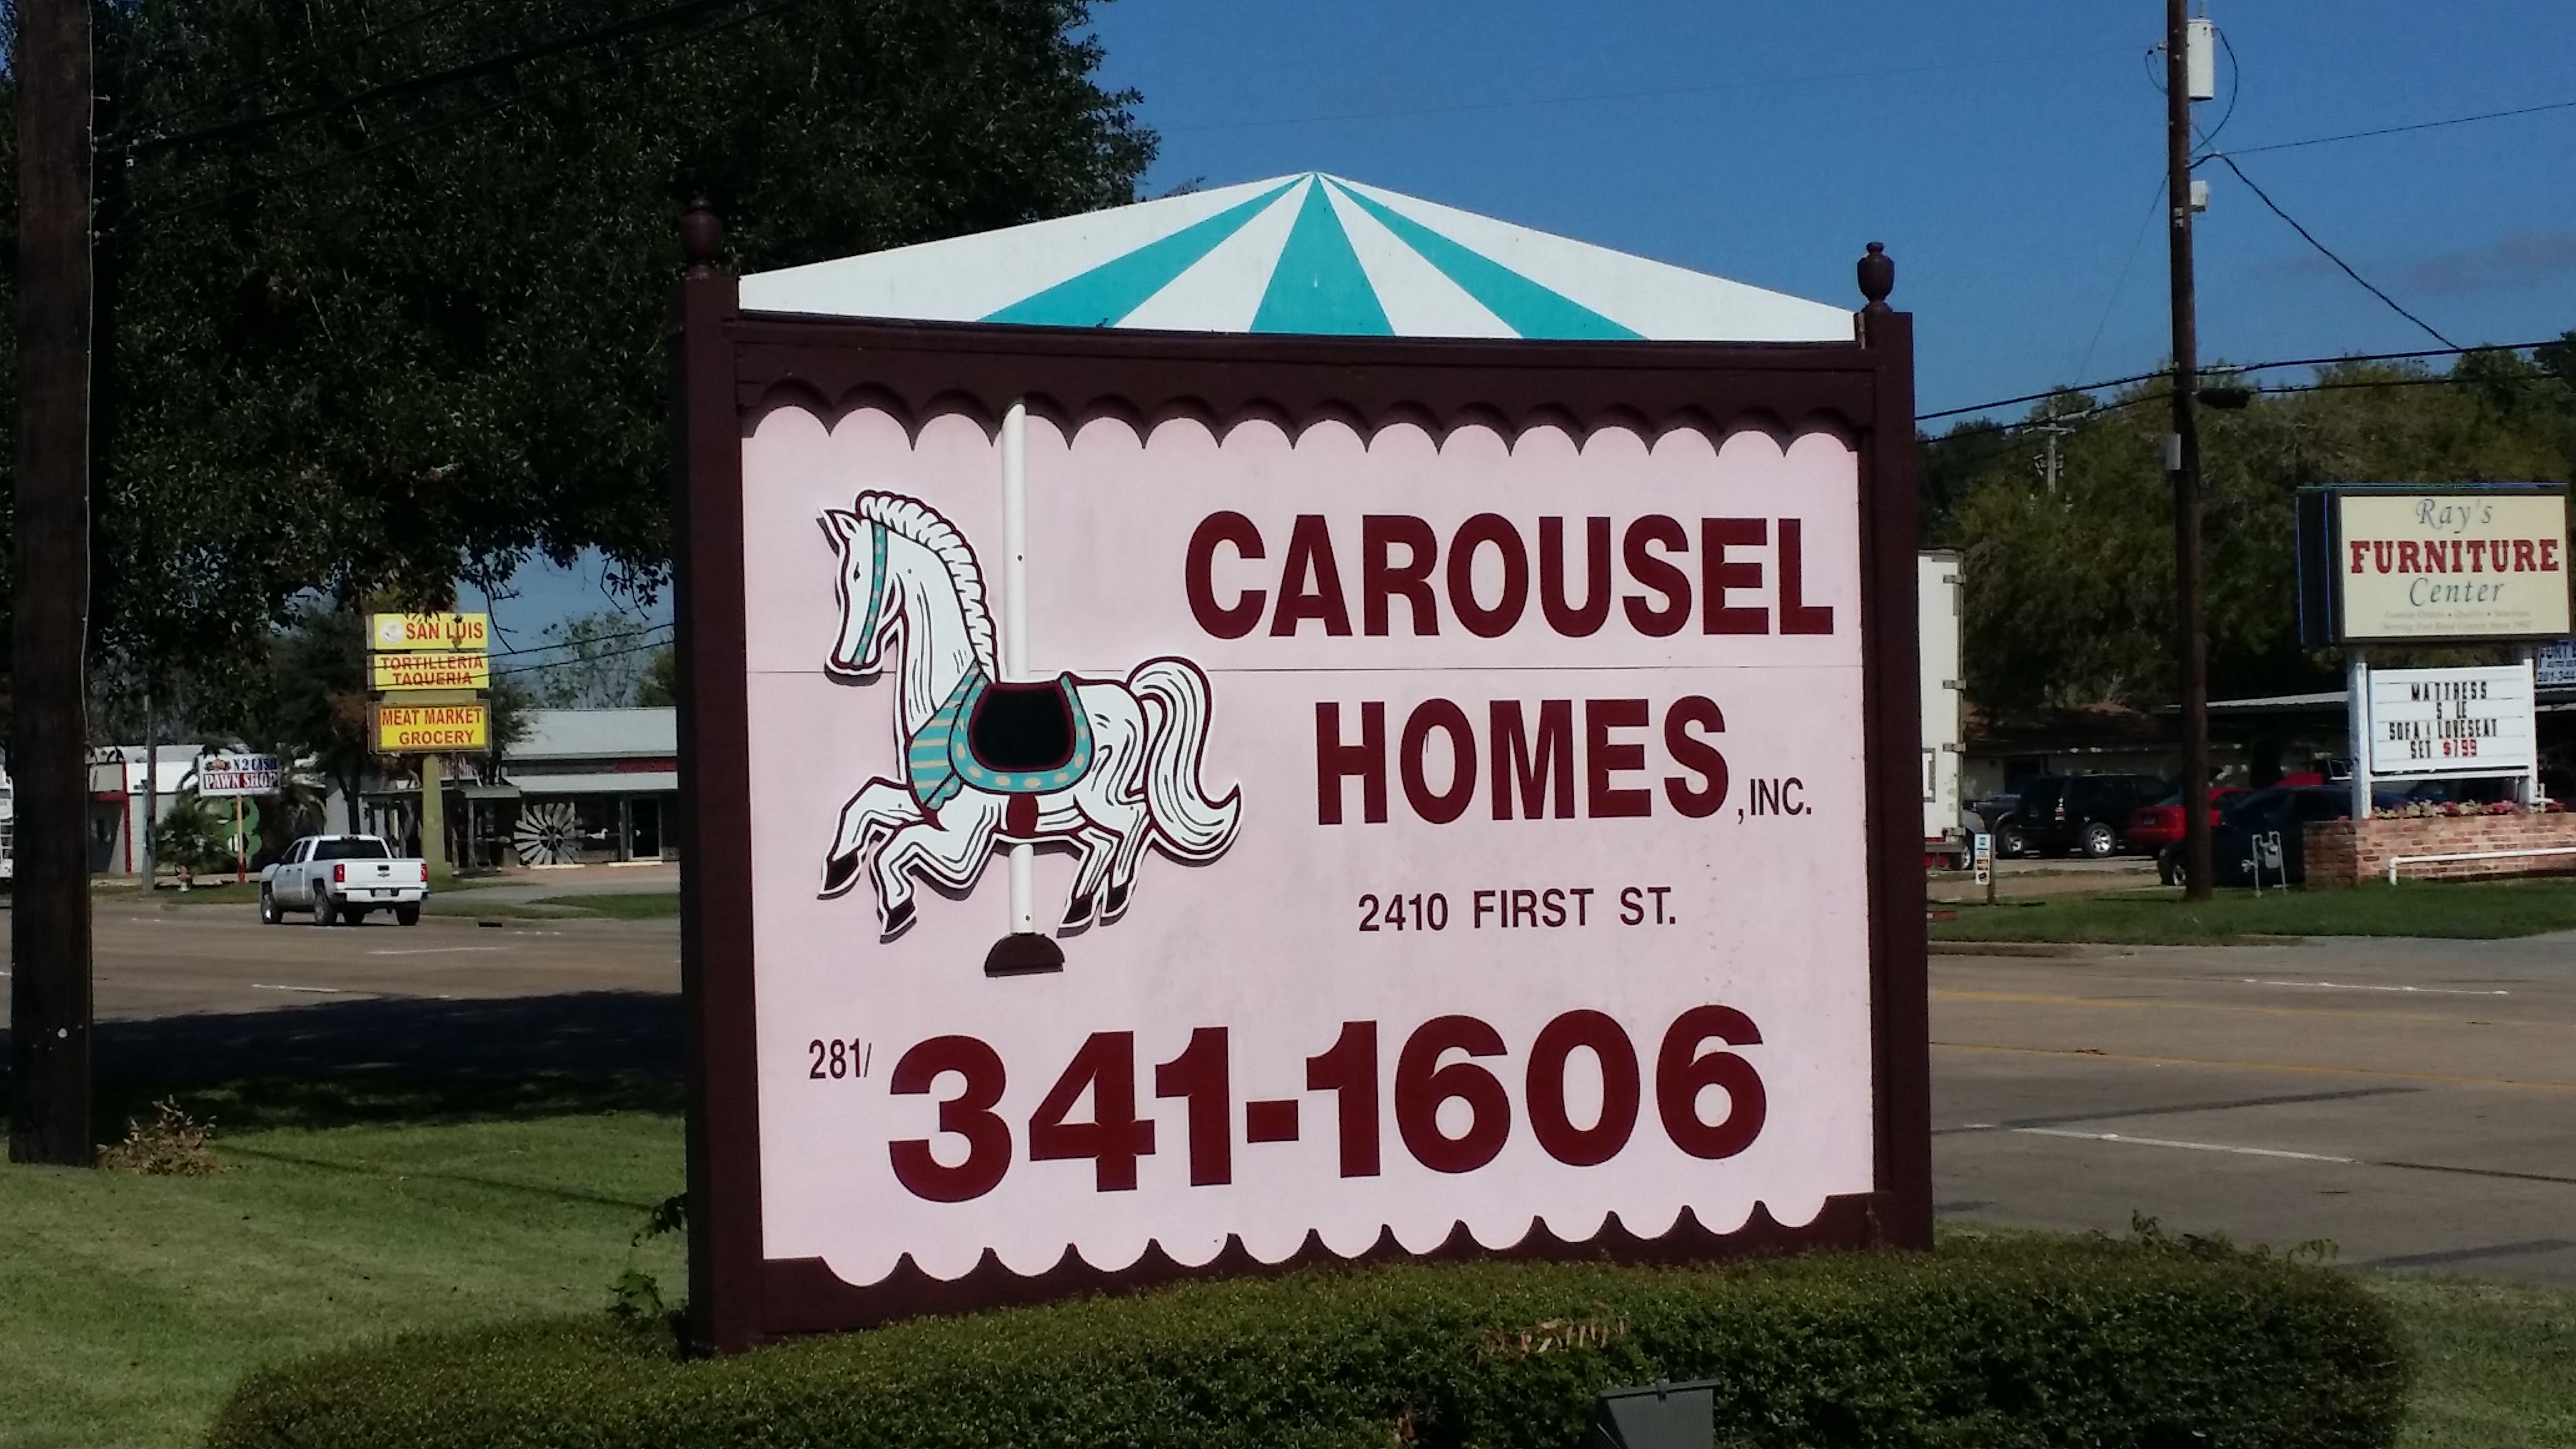 Carousel Homes, Inc. Rosenberg (281)341-1606